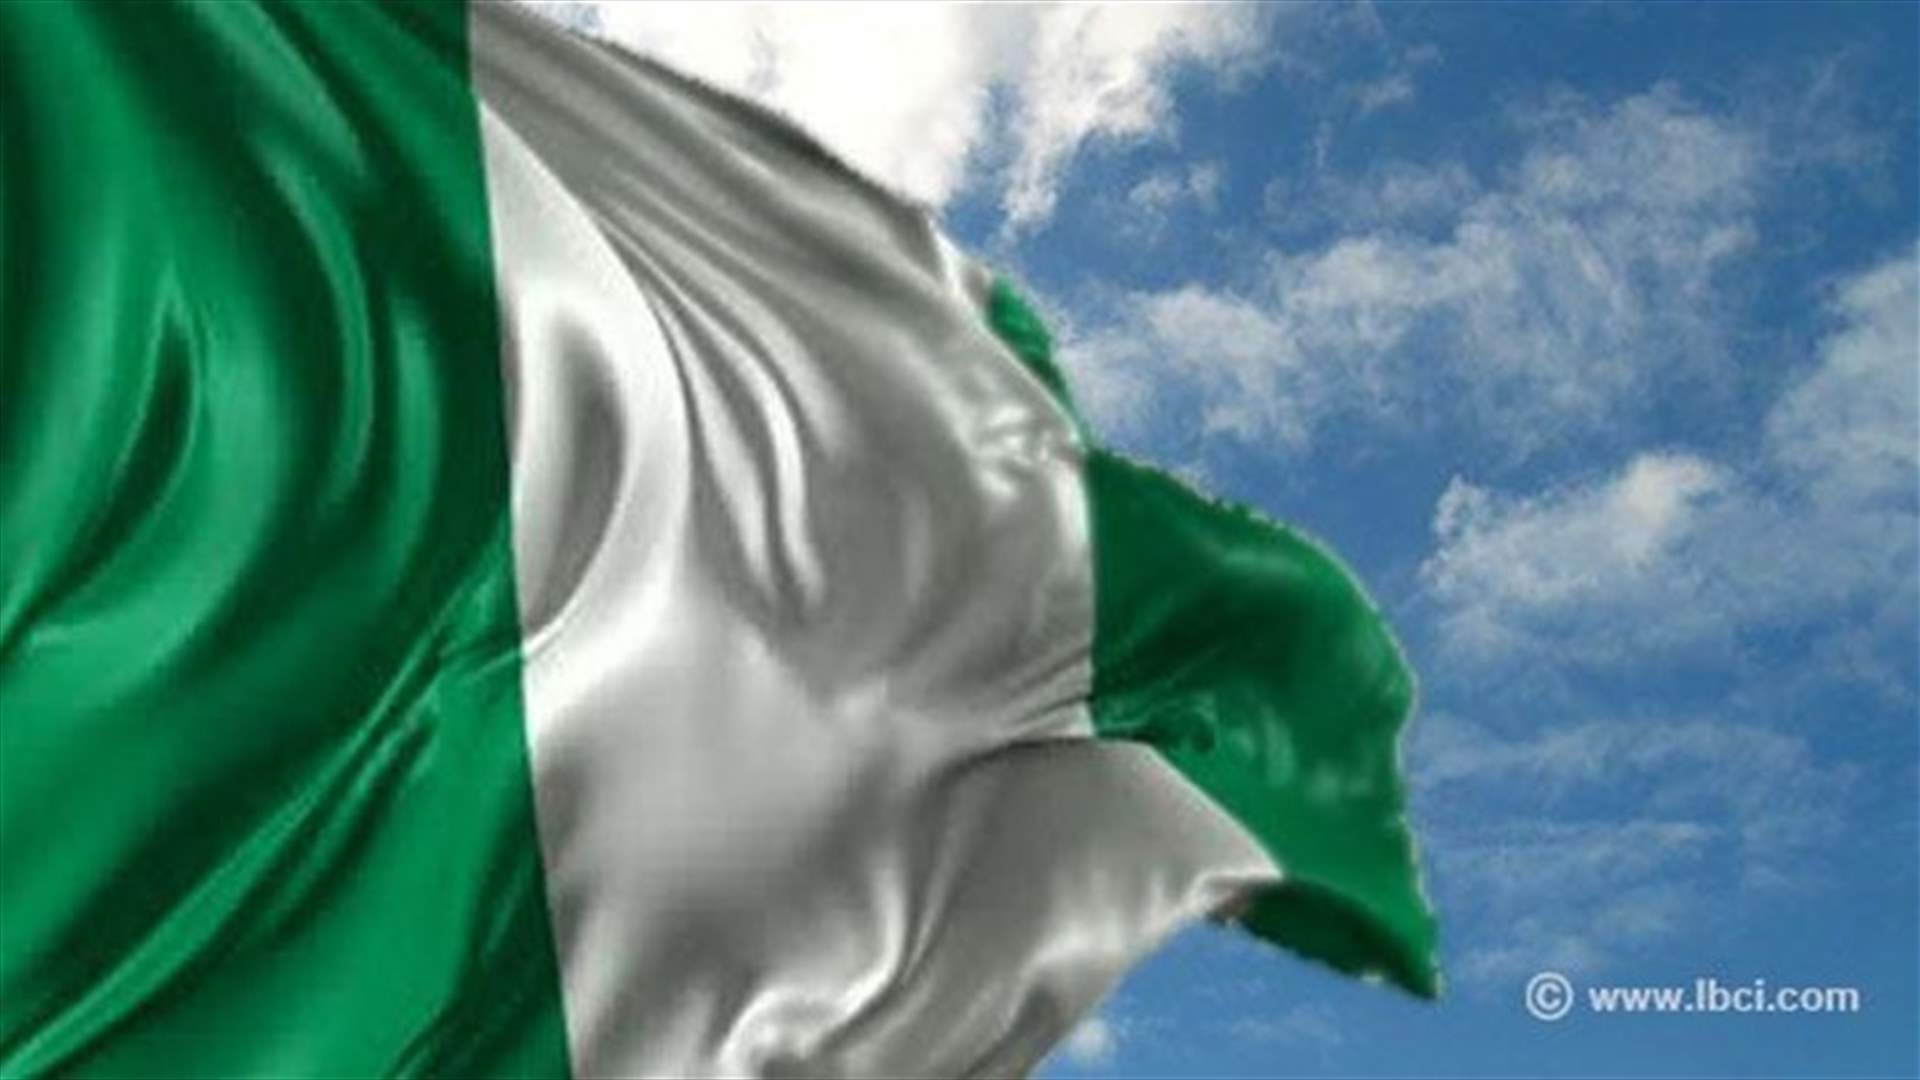 120 قتيلا باعتداء استهدف مسجد كانو في شمال نيجيريا